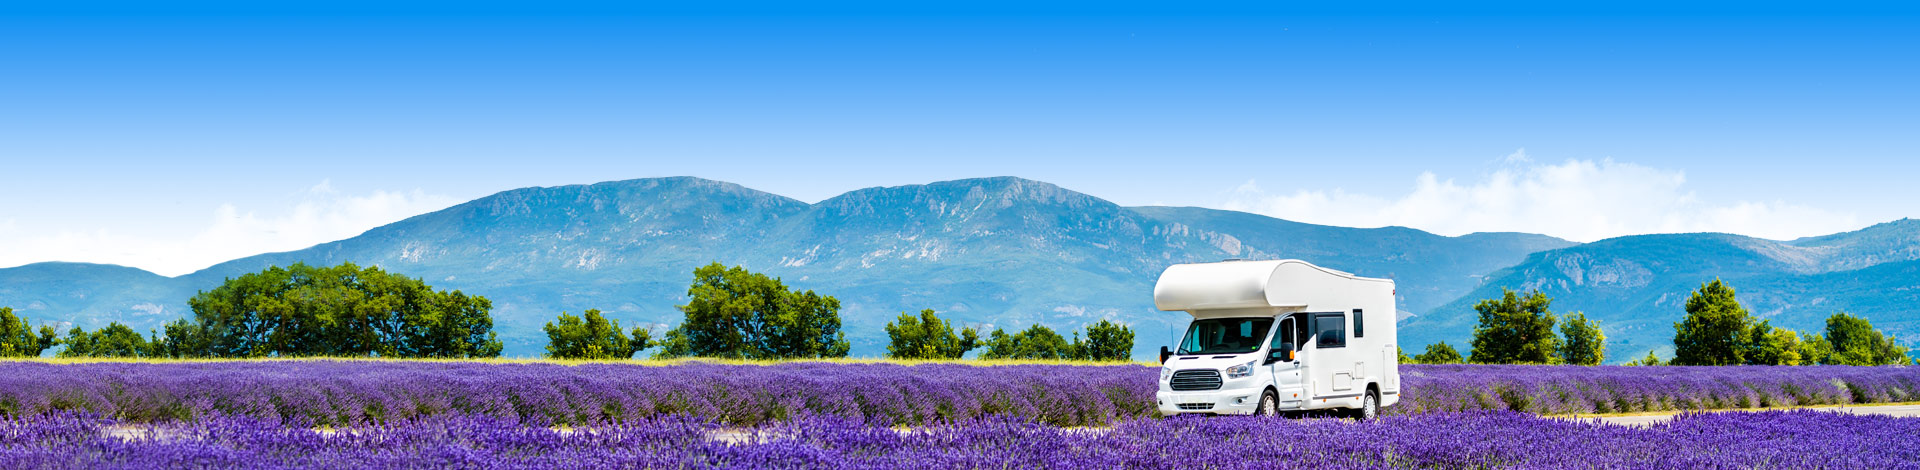 Een auto in de lavendelvelden met een last minute vakantie naar een camping in Frankrijk